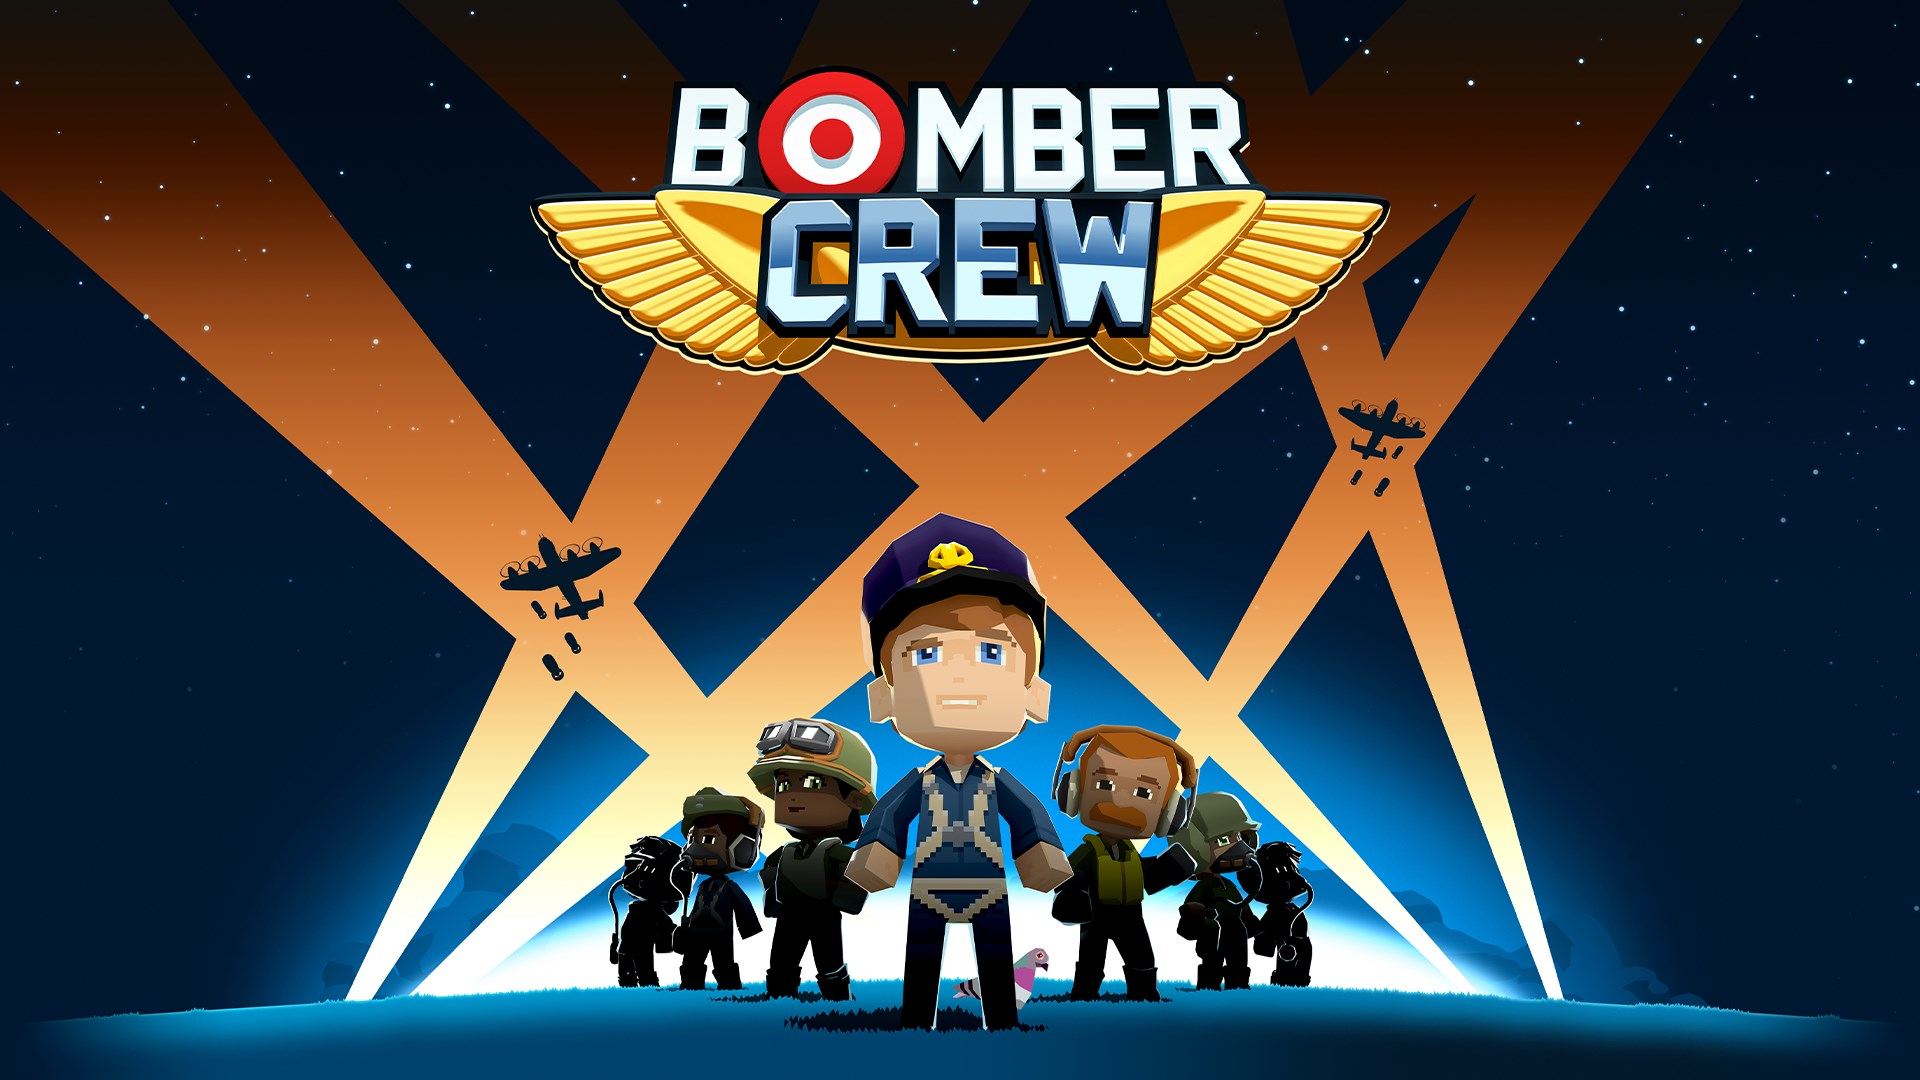 您可以透過 Steam 免費且永久地將 Bomber Crew 遊戲添加到您的檔案中。